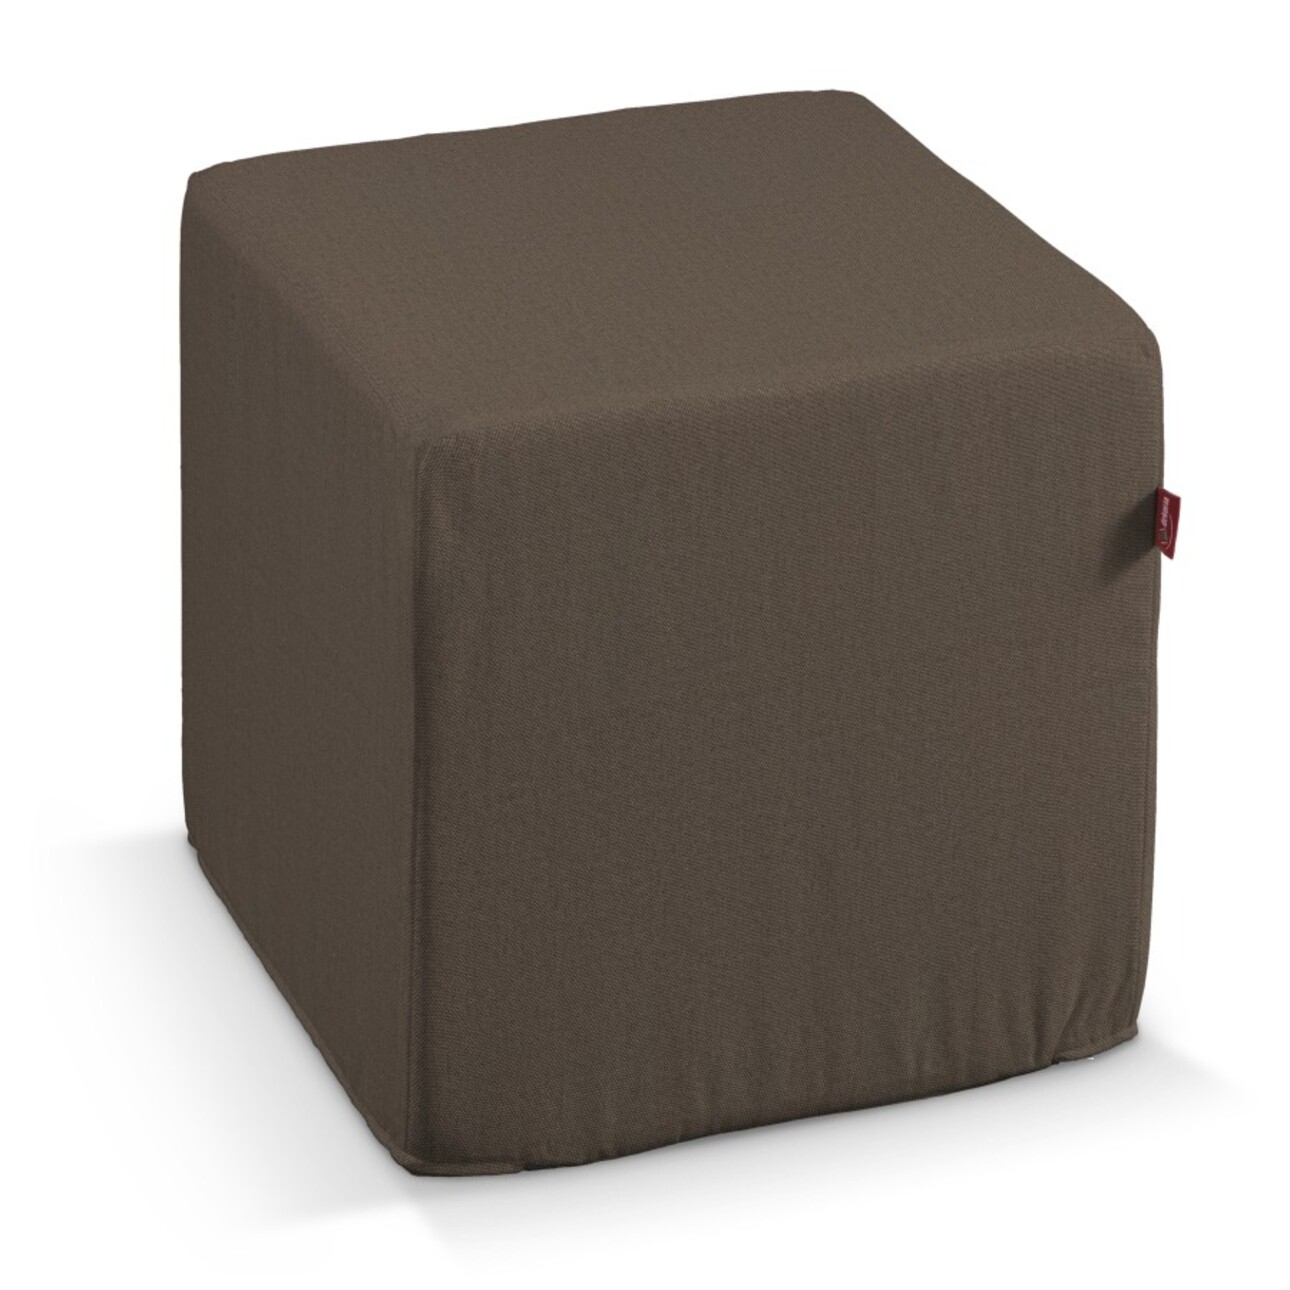 Bezug für Sitzwürfel, braun, Bezug für Sitzwürfel 40 x 40 x 40 cm, Etna (70 günstig online kaufen